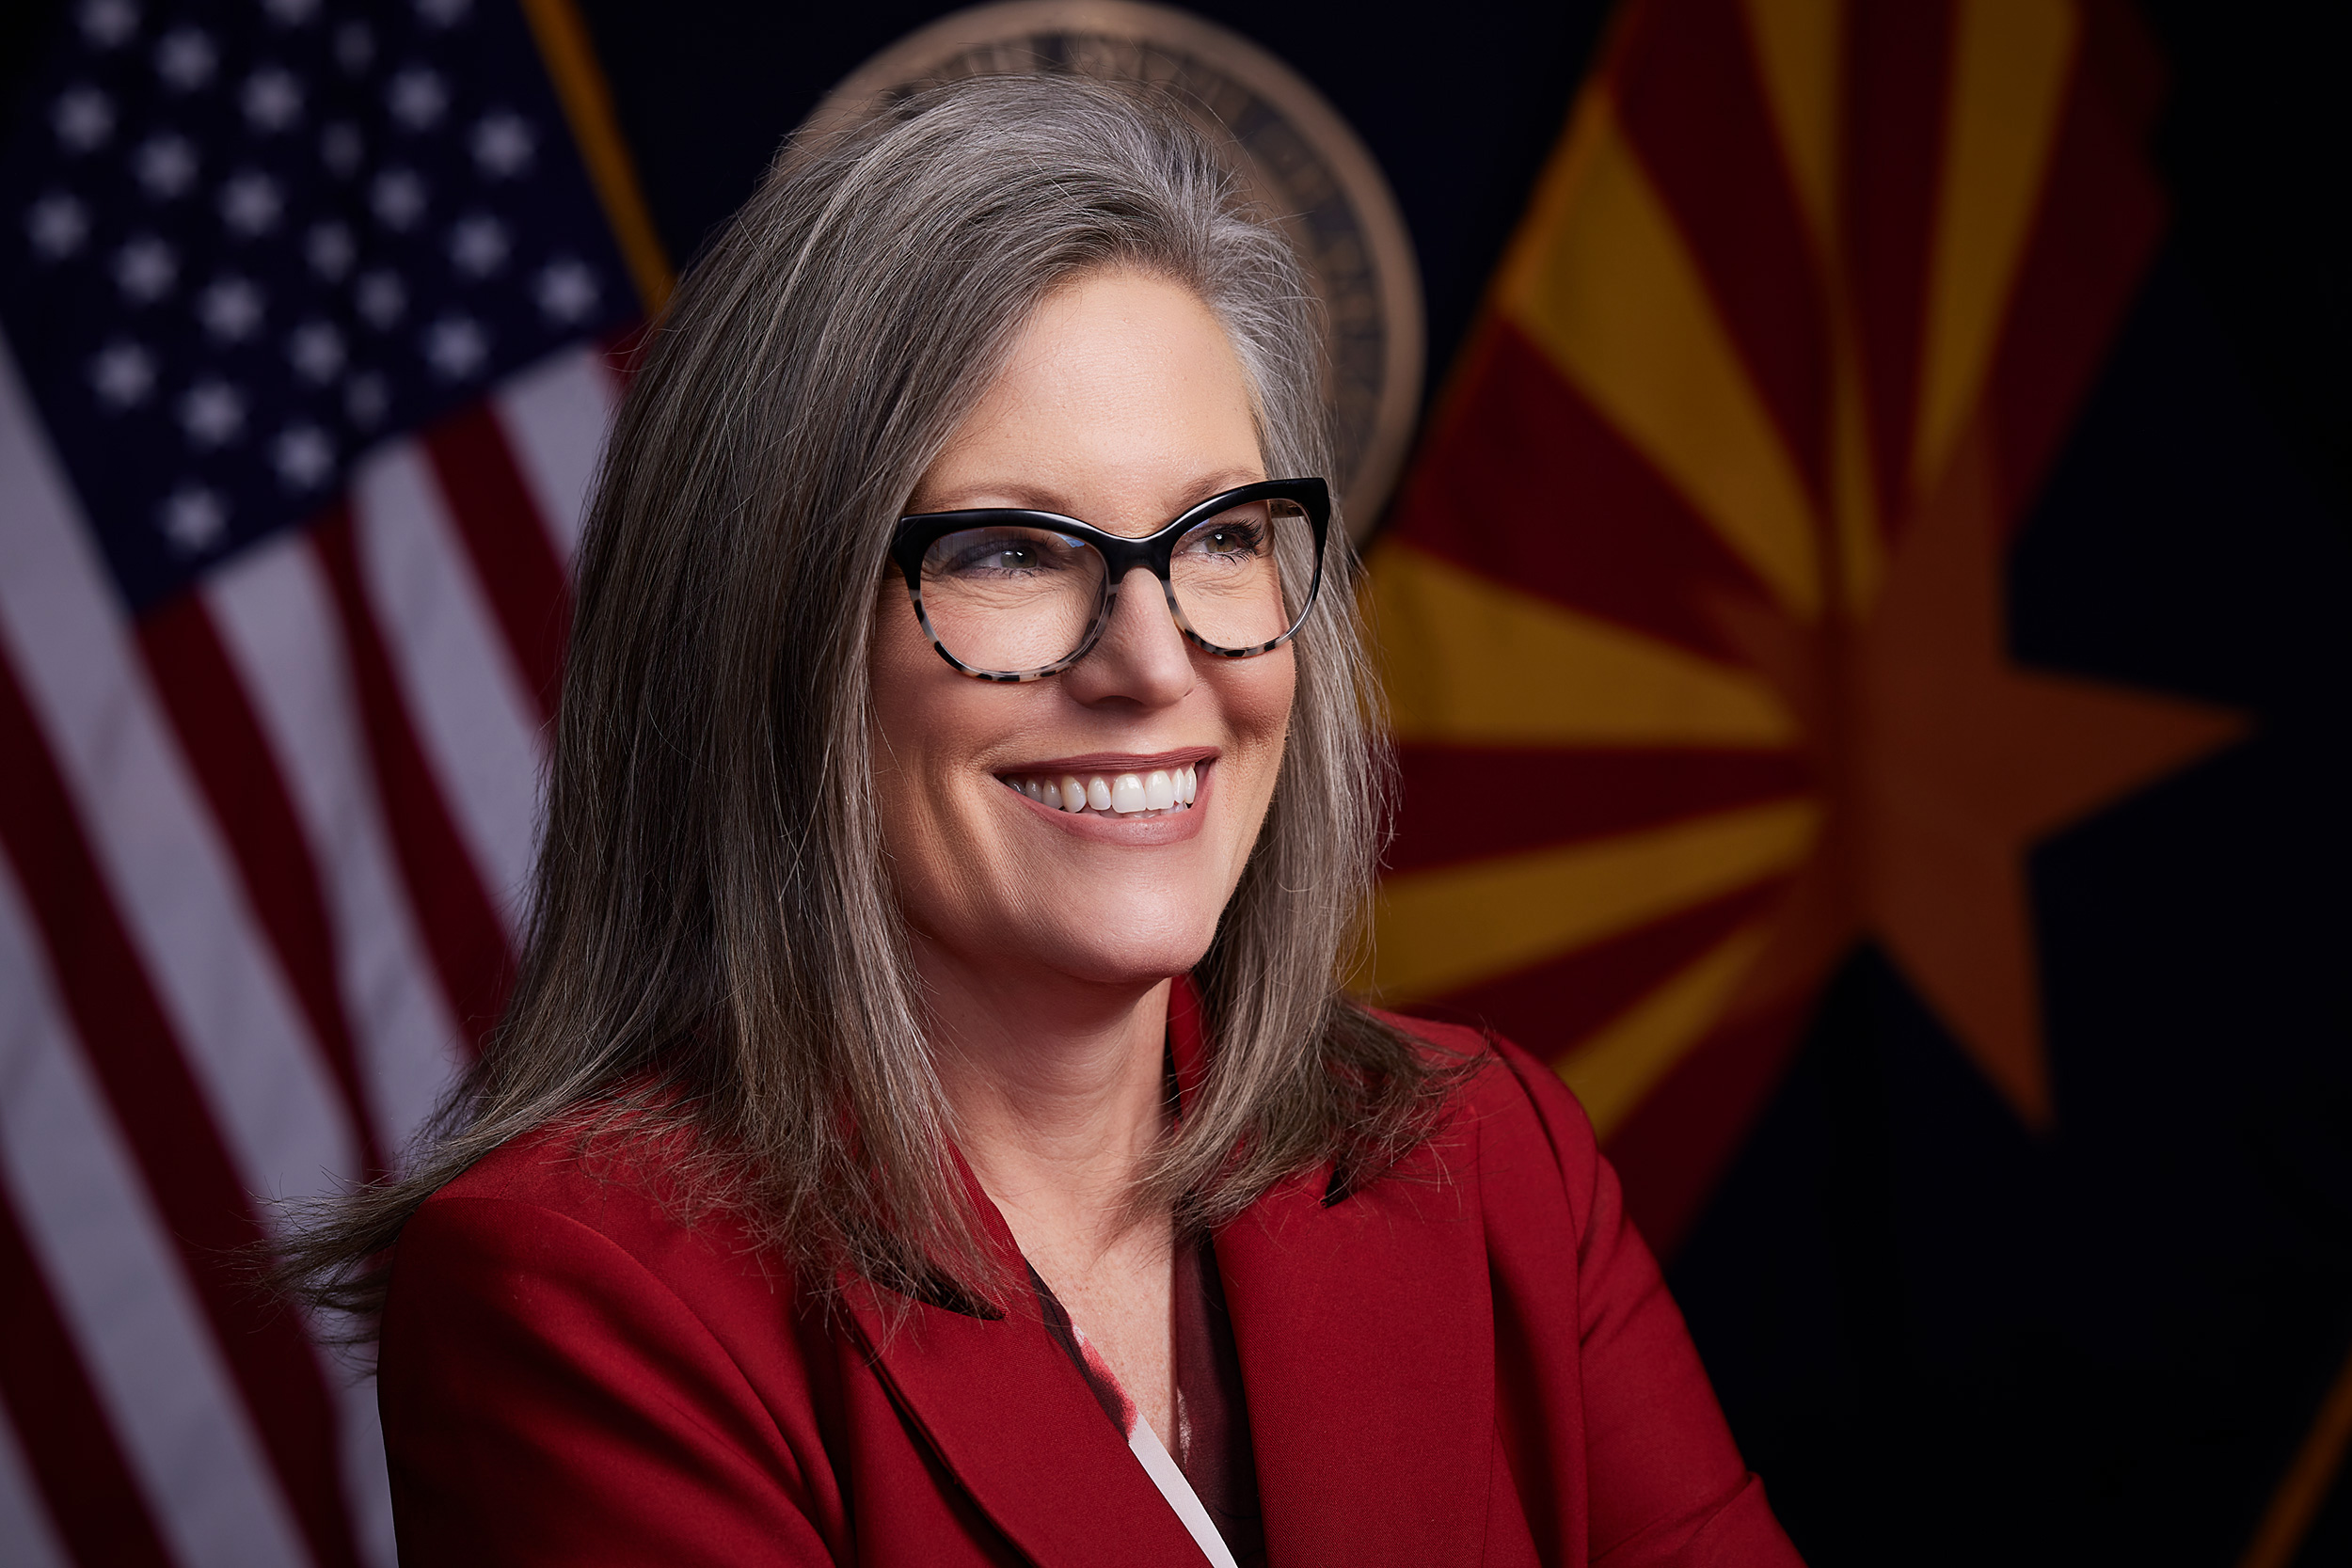 THE NEW REPUBLIC | Arizona Governor Katie Hobbs